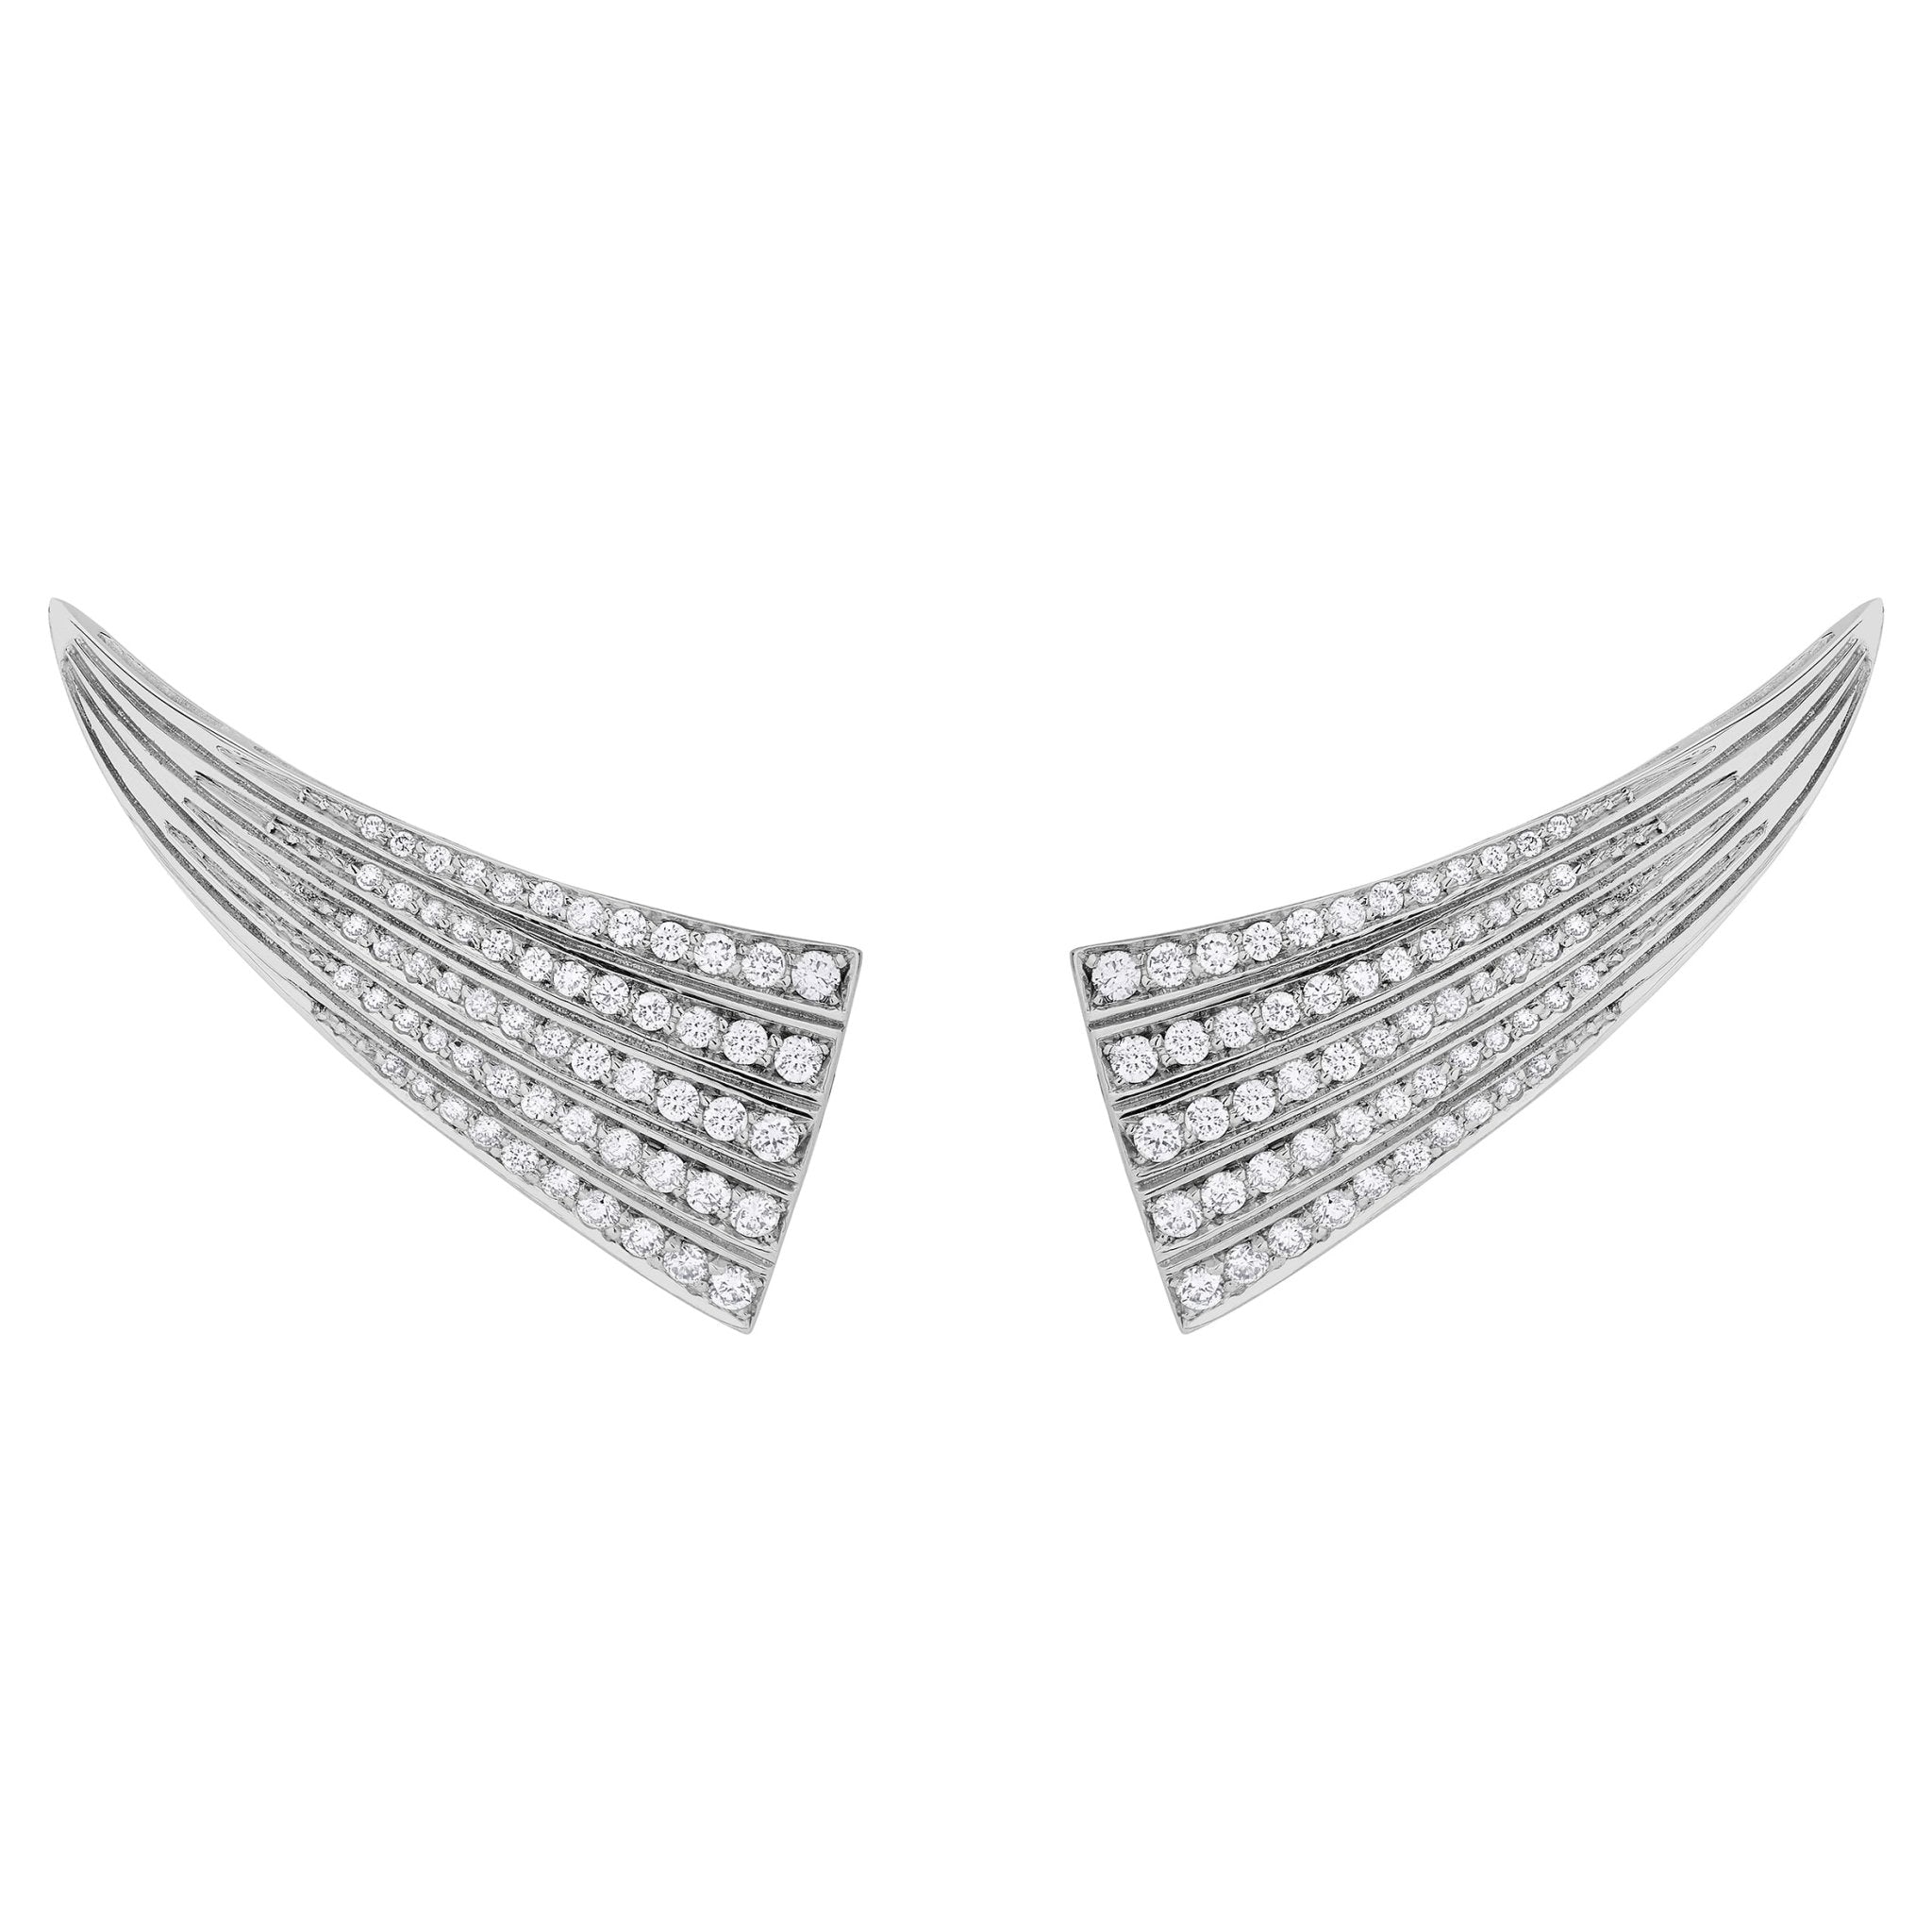 Brinco Ear Cuff Deco 2019 De Ouro Branco 18K E Diamante - Jack Vartanian - Ear Cuffs